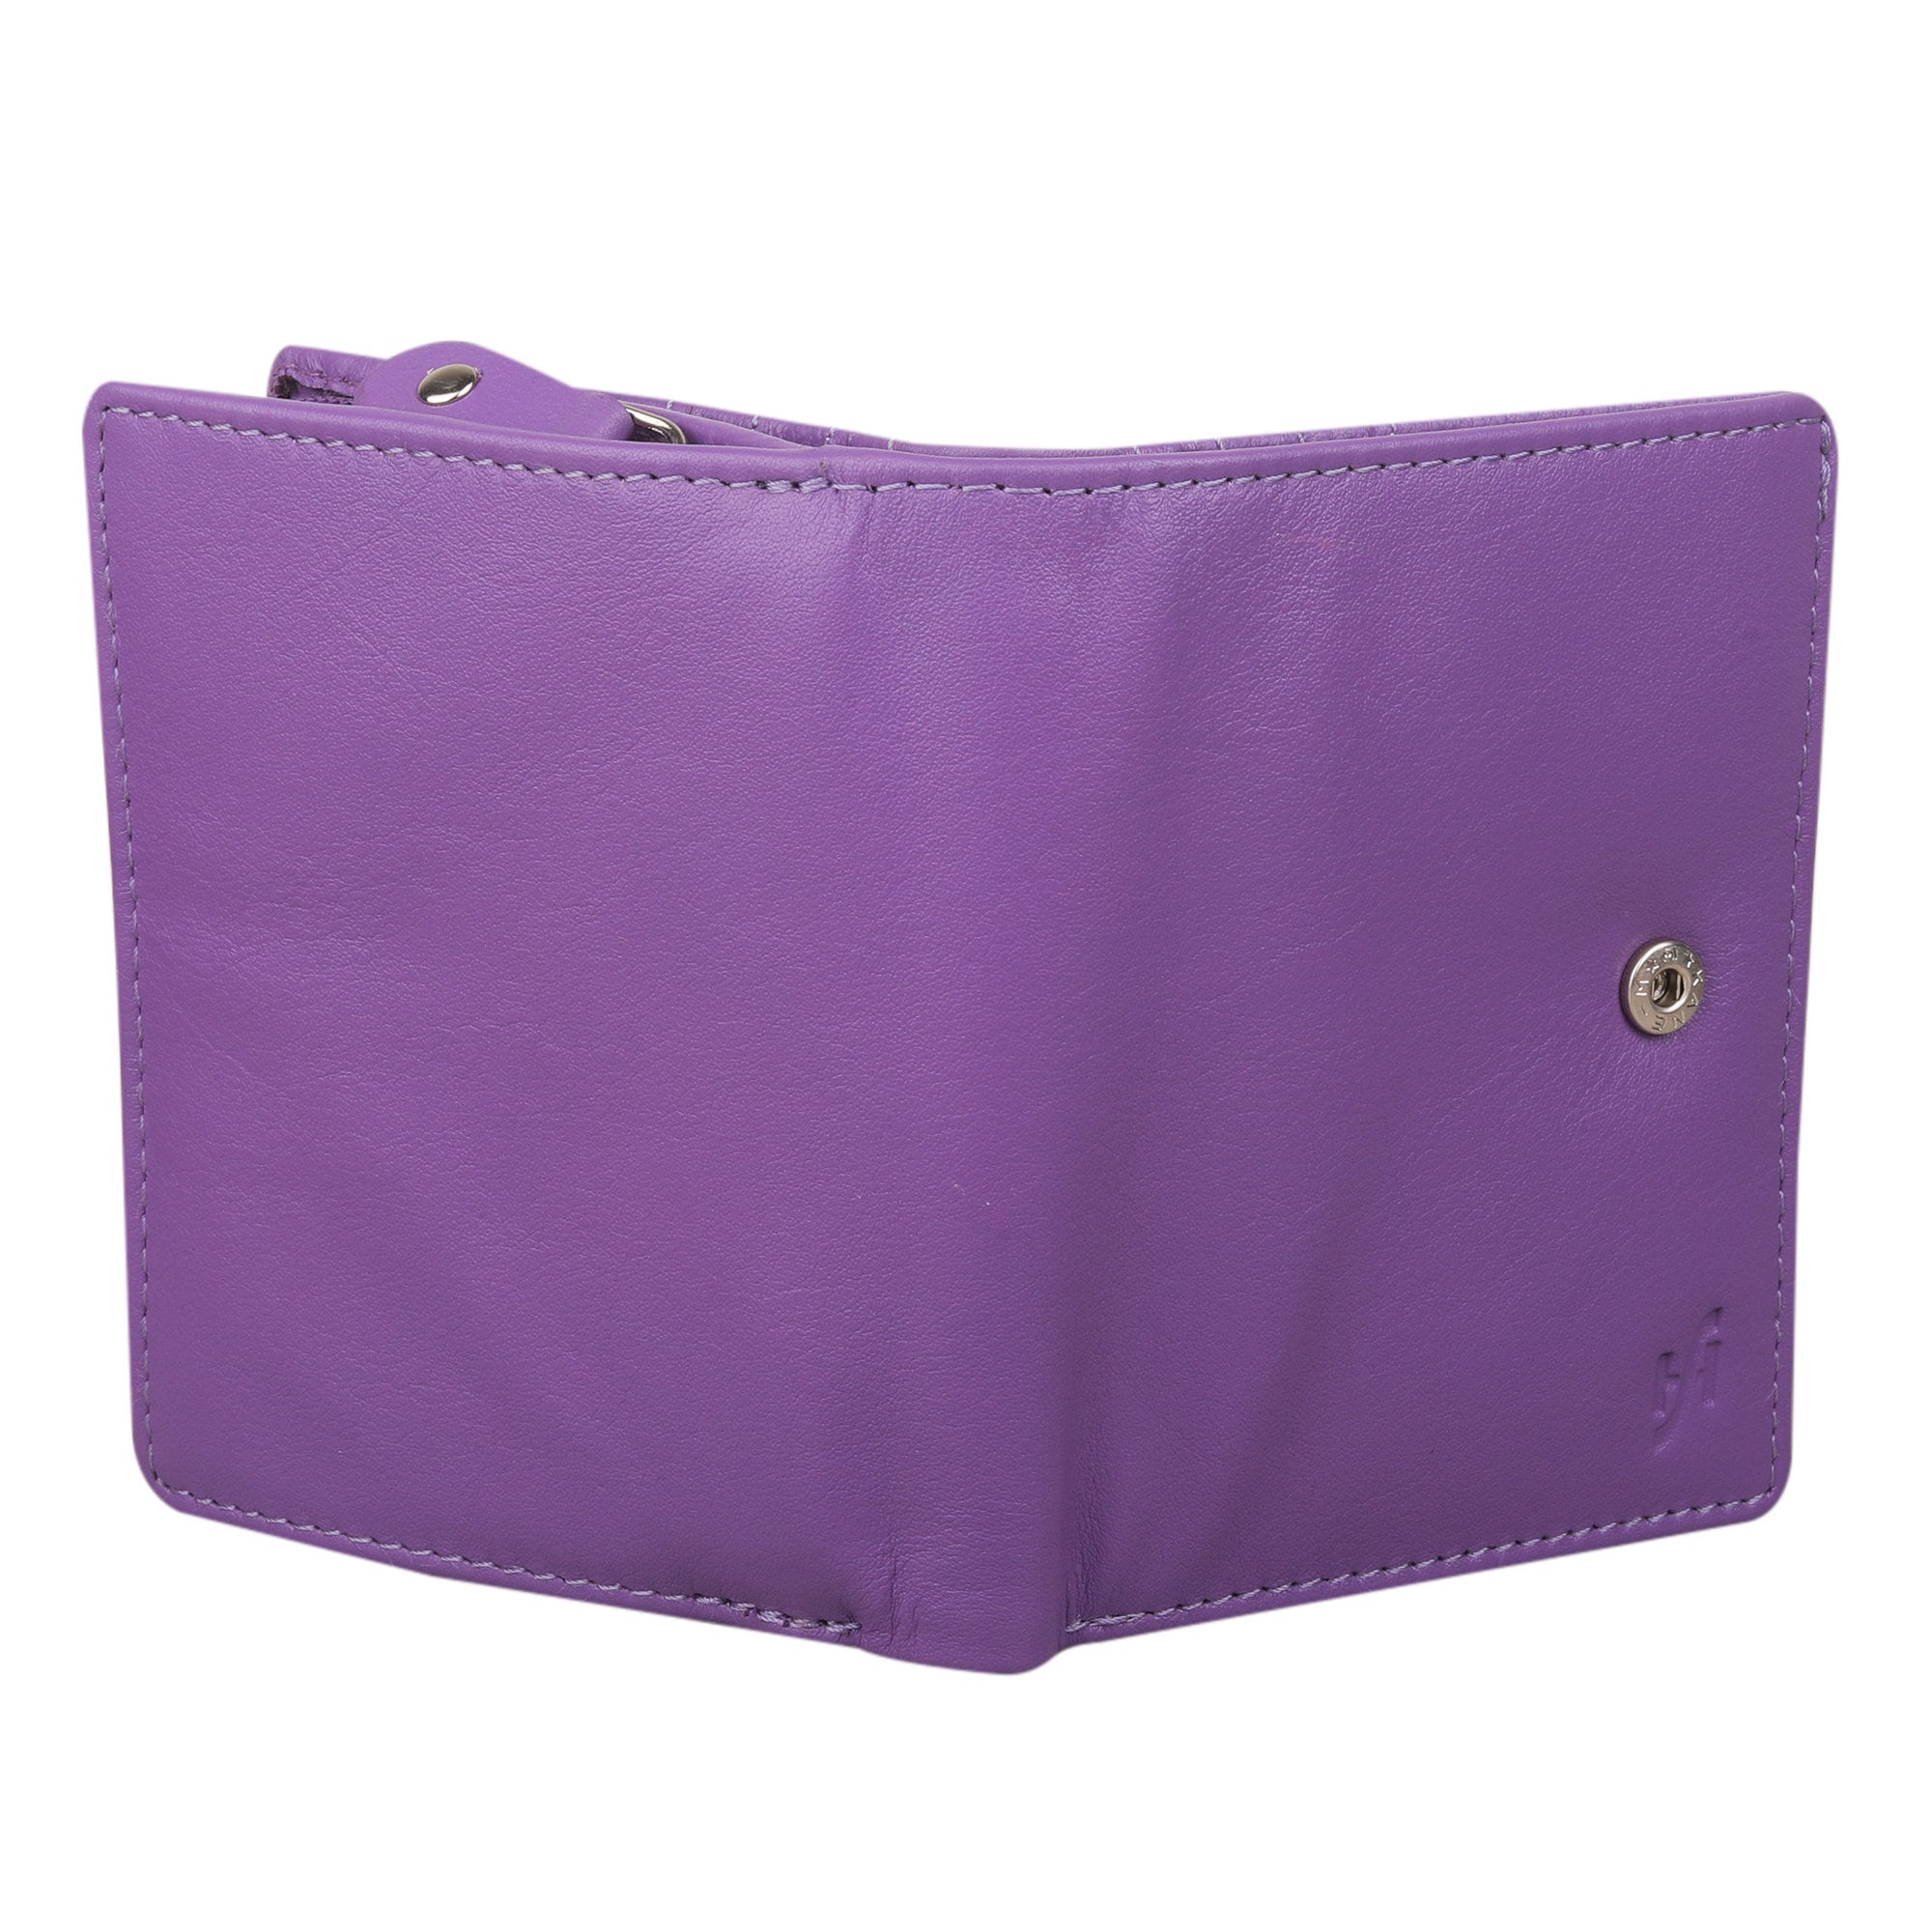 Portefeuille en cuir violet anti-RFID pour femme, sac à main pour femme  avec une grande poche zippée pour pièce de monnaie, fenêtre  d'identification et porte-carte de crédit 5530 -  France